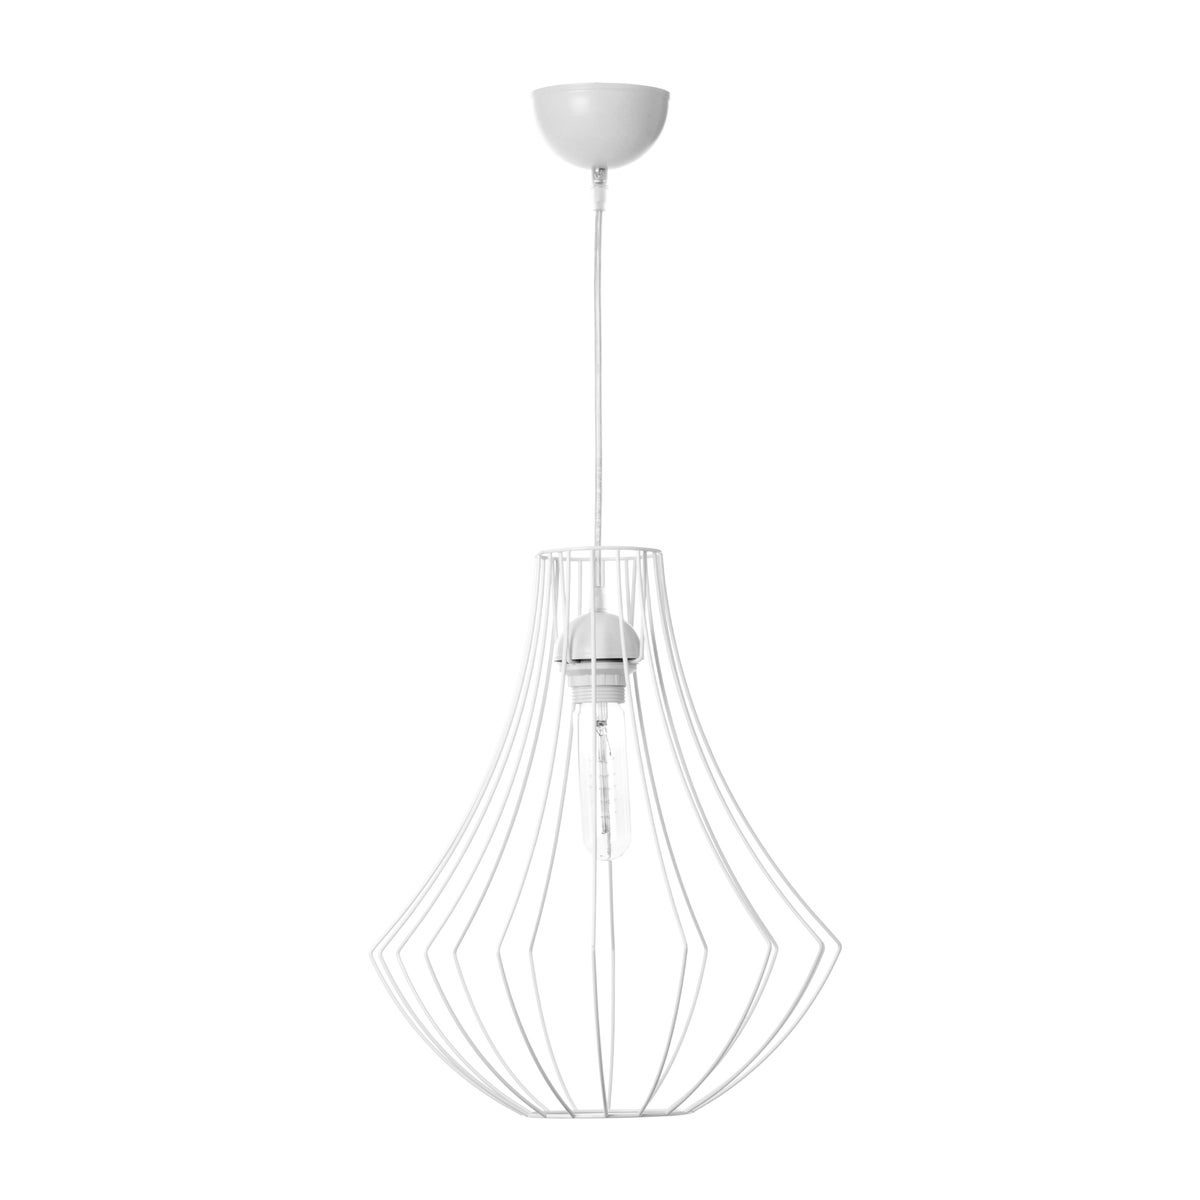 Industrielle Gitterpendelleuchte in Weiß, Käfiglampe Hängelampe im Loft Stil | Wohnzimmer Esszimmer Leuchte